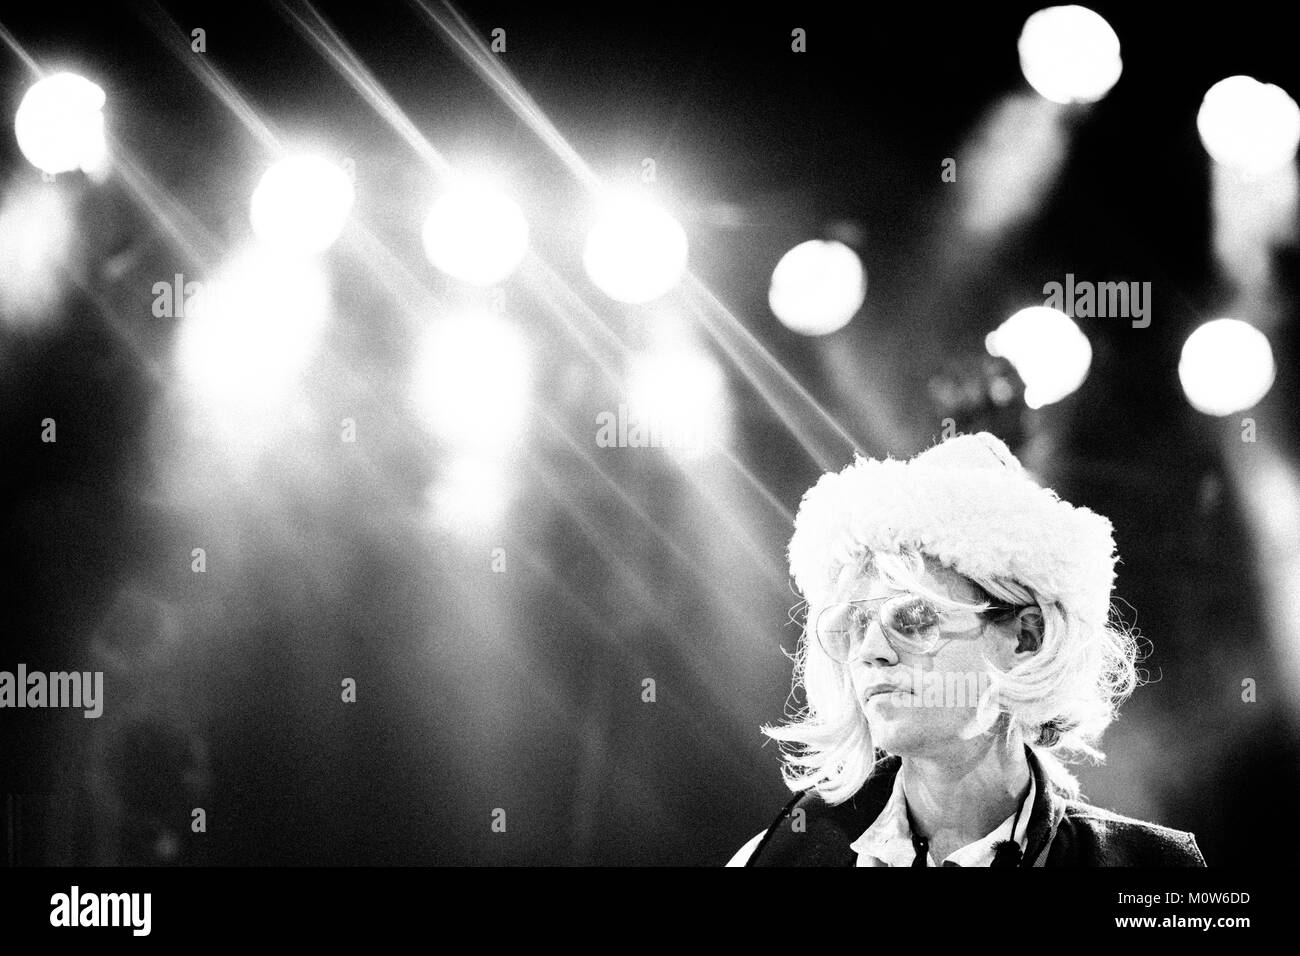 Il Kiwi pop-rock musicista e cantante Connan Mockasin esegue un concerto dal vivo il padiglione stadio a Roskilde Festival 2014. Danimarca 04.07.2014. Foto Stock